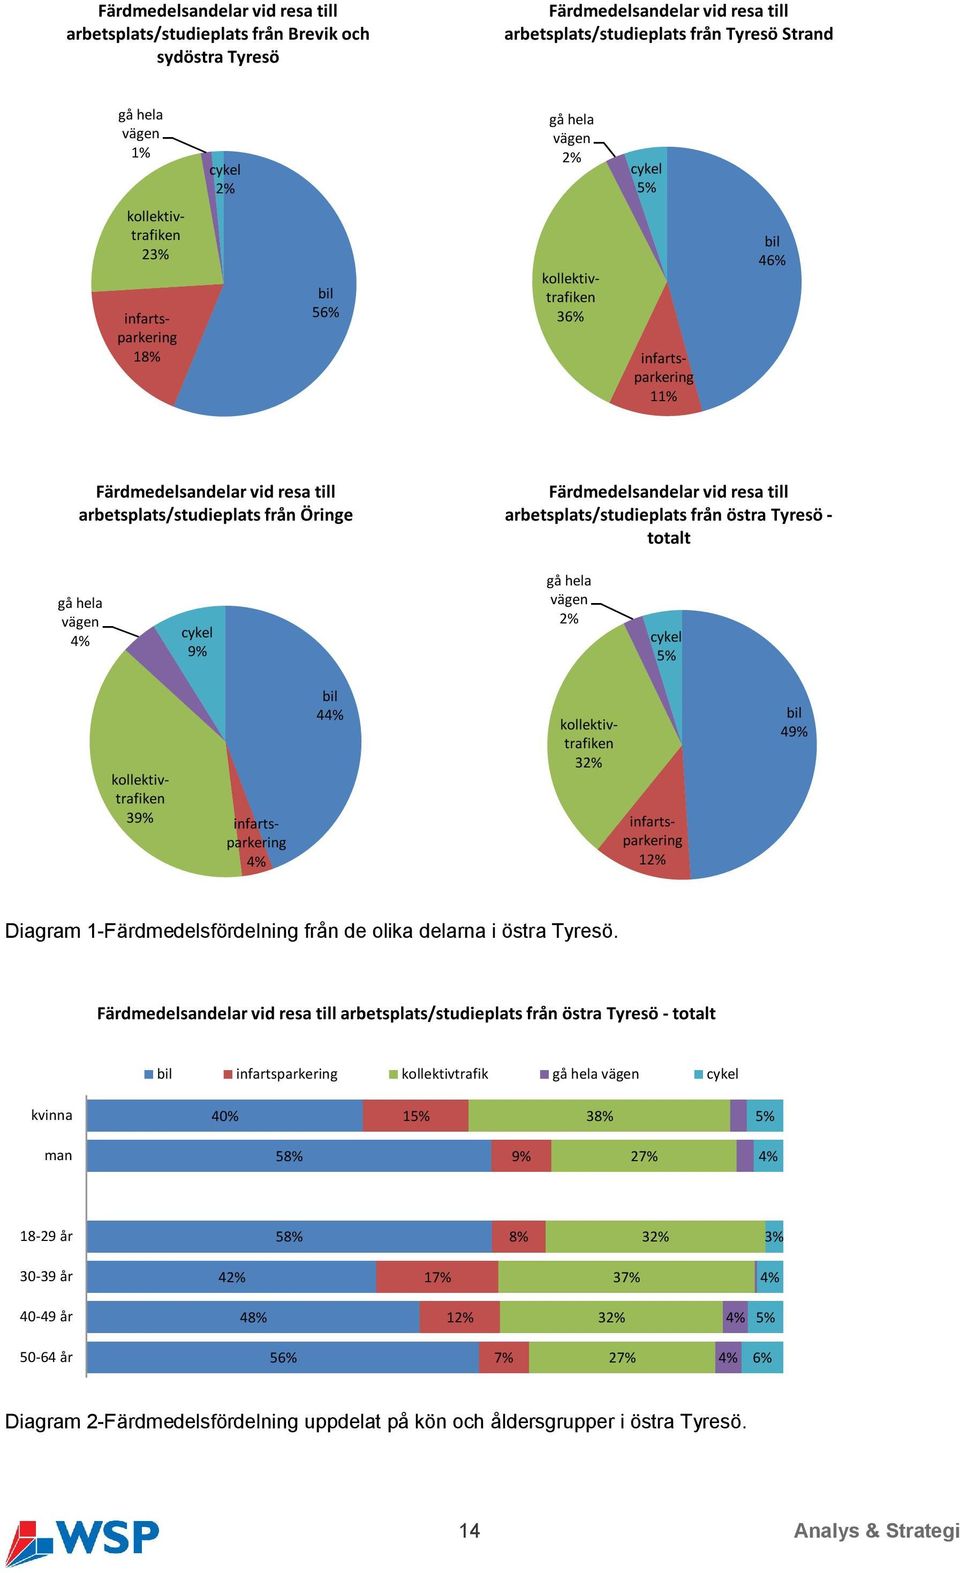 arbetsplats/studieplats från östra Tyresö - totalt gå hela vägen 4% cykel 9% gå hela vägen 2% cykel 5% kollektivtrafiken 39% infartsparkering 4% bil 44% kollektivtrafiken 32% infartsparkering 12% bil